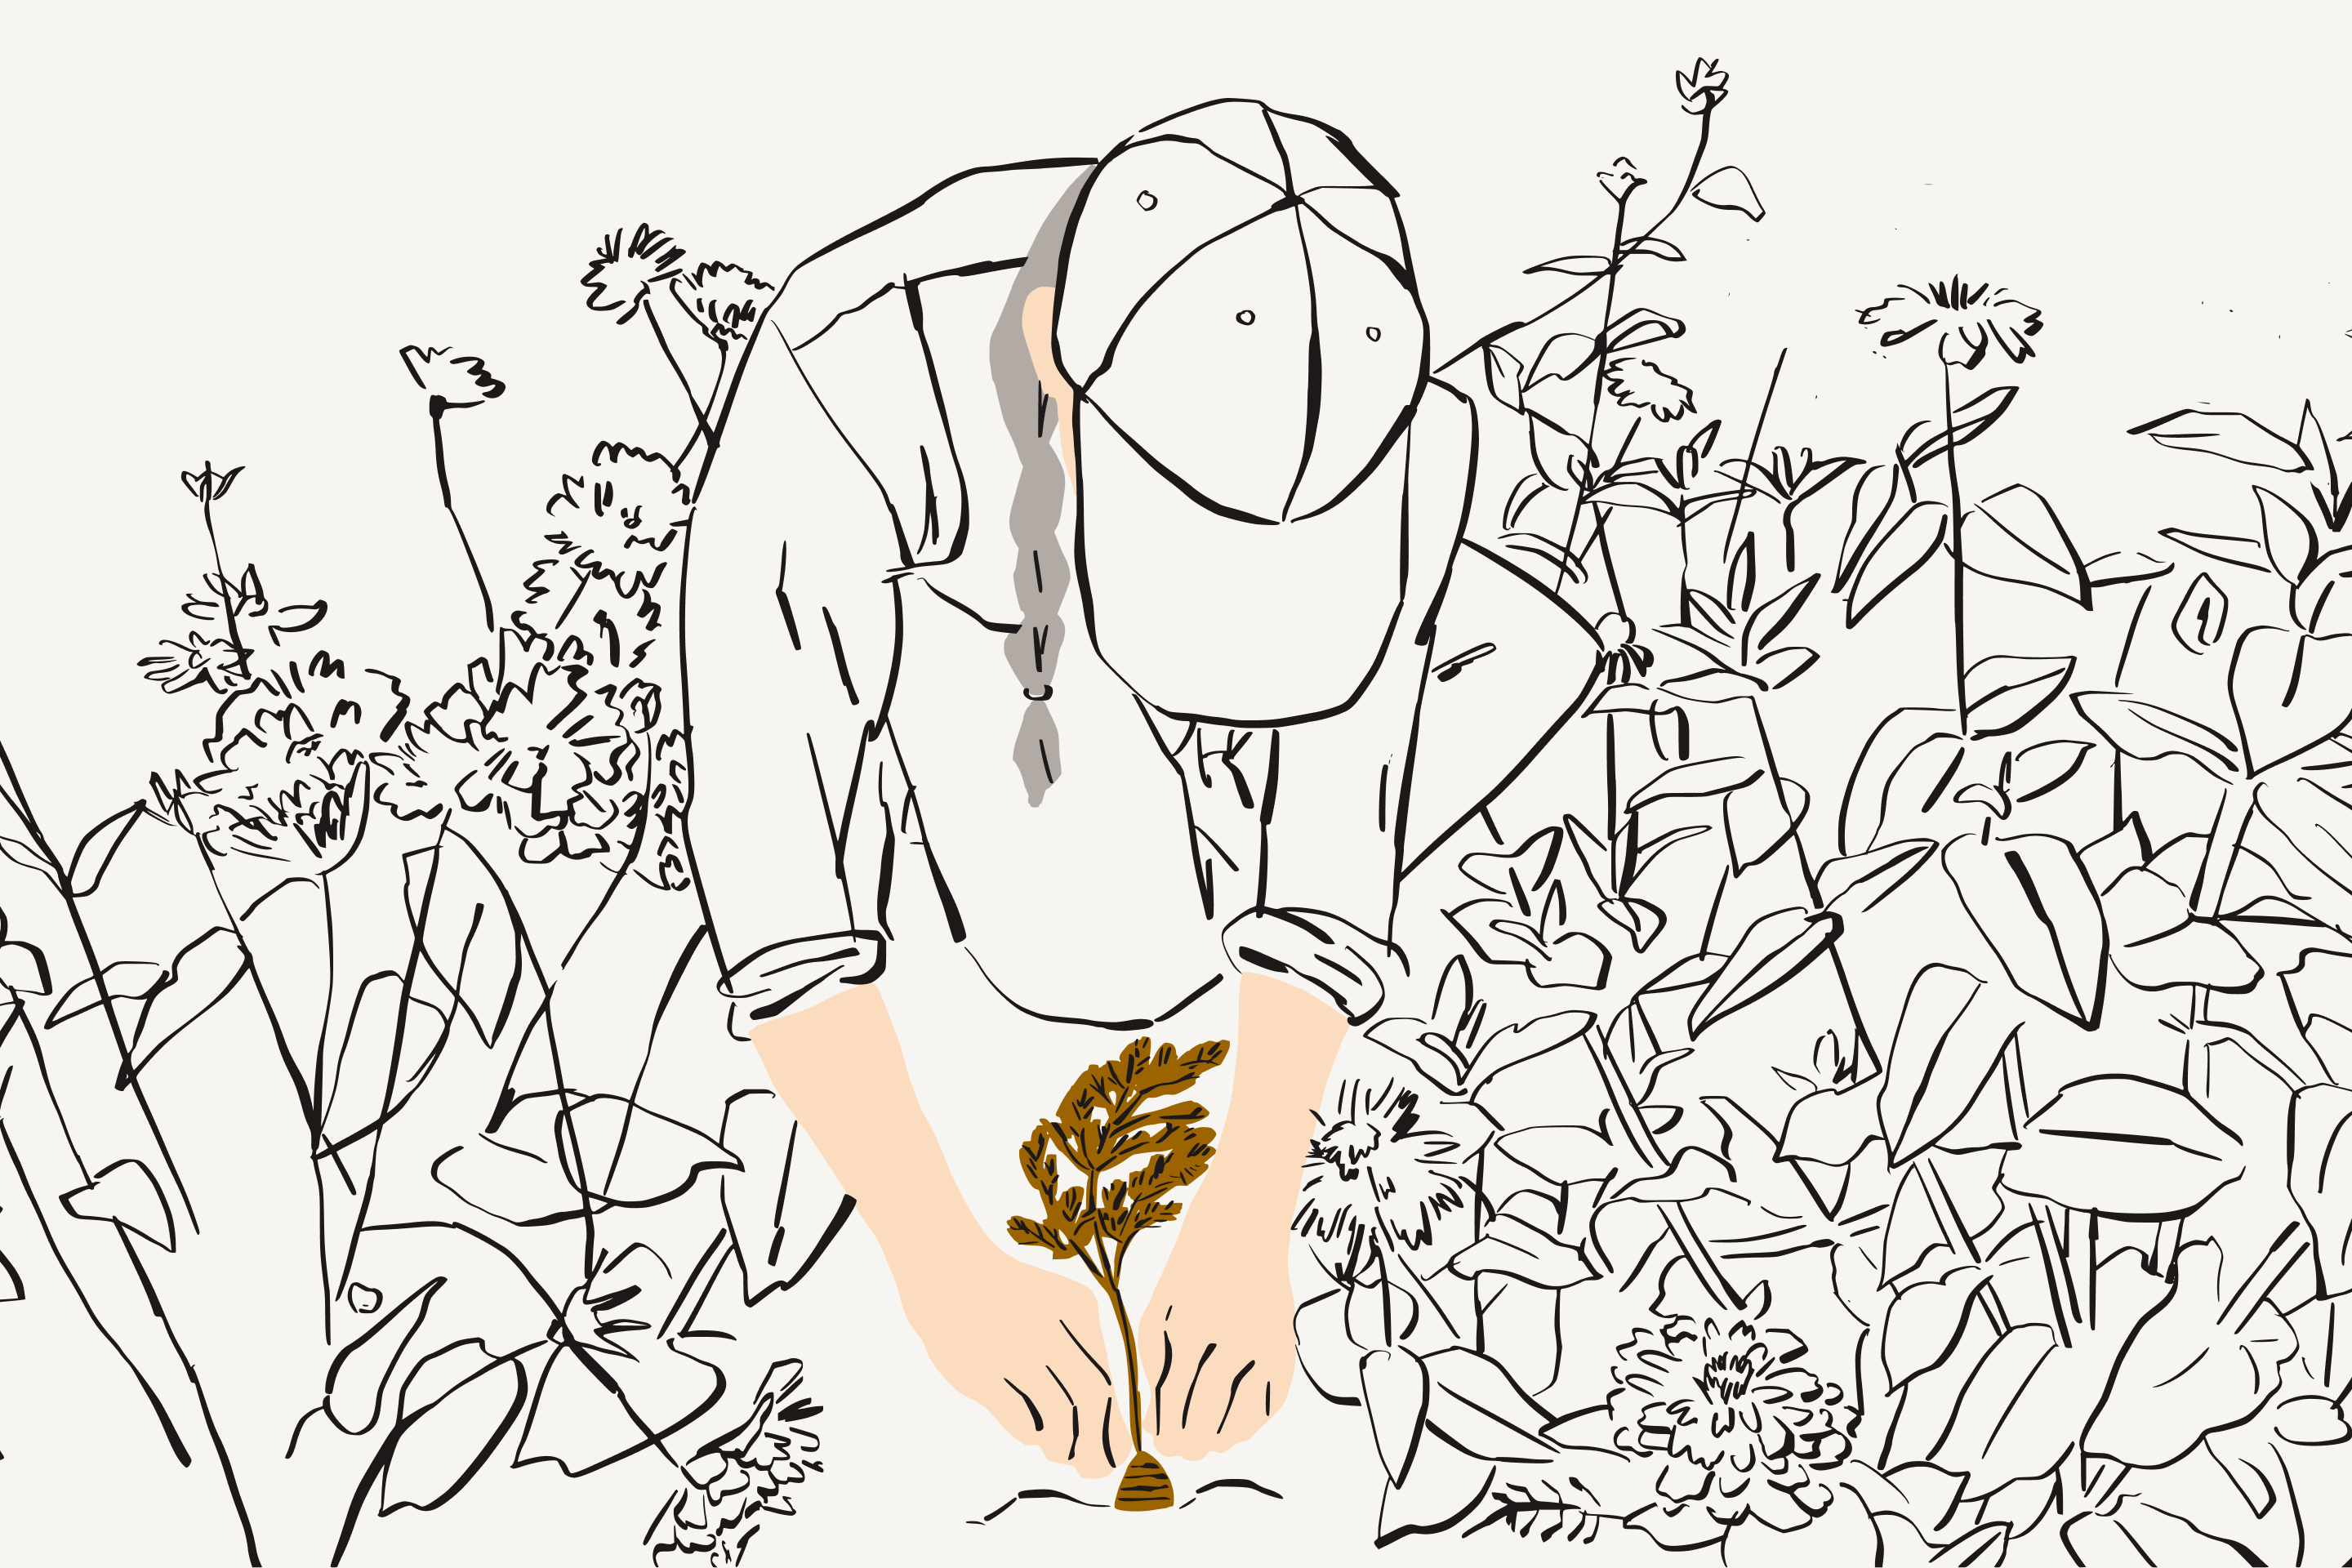 Ilustração mostrando uma mulher rodeada de folhagem e plantando um tubérculo